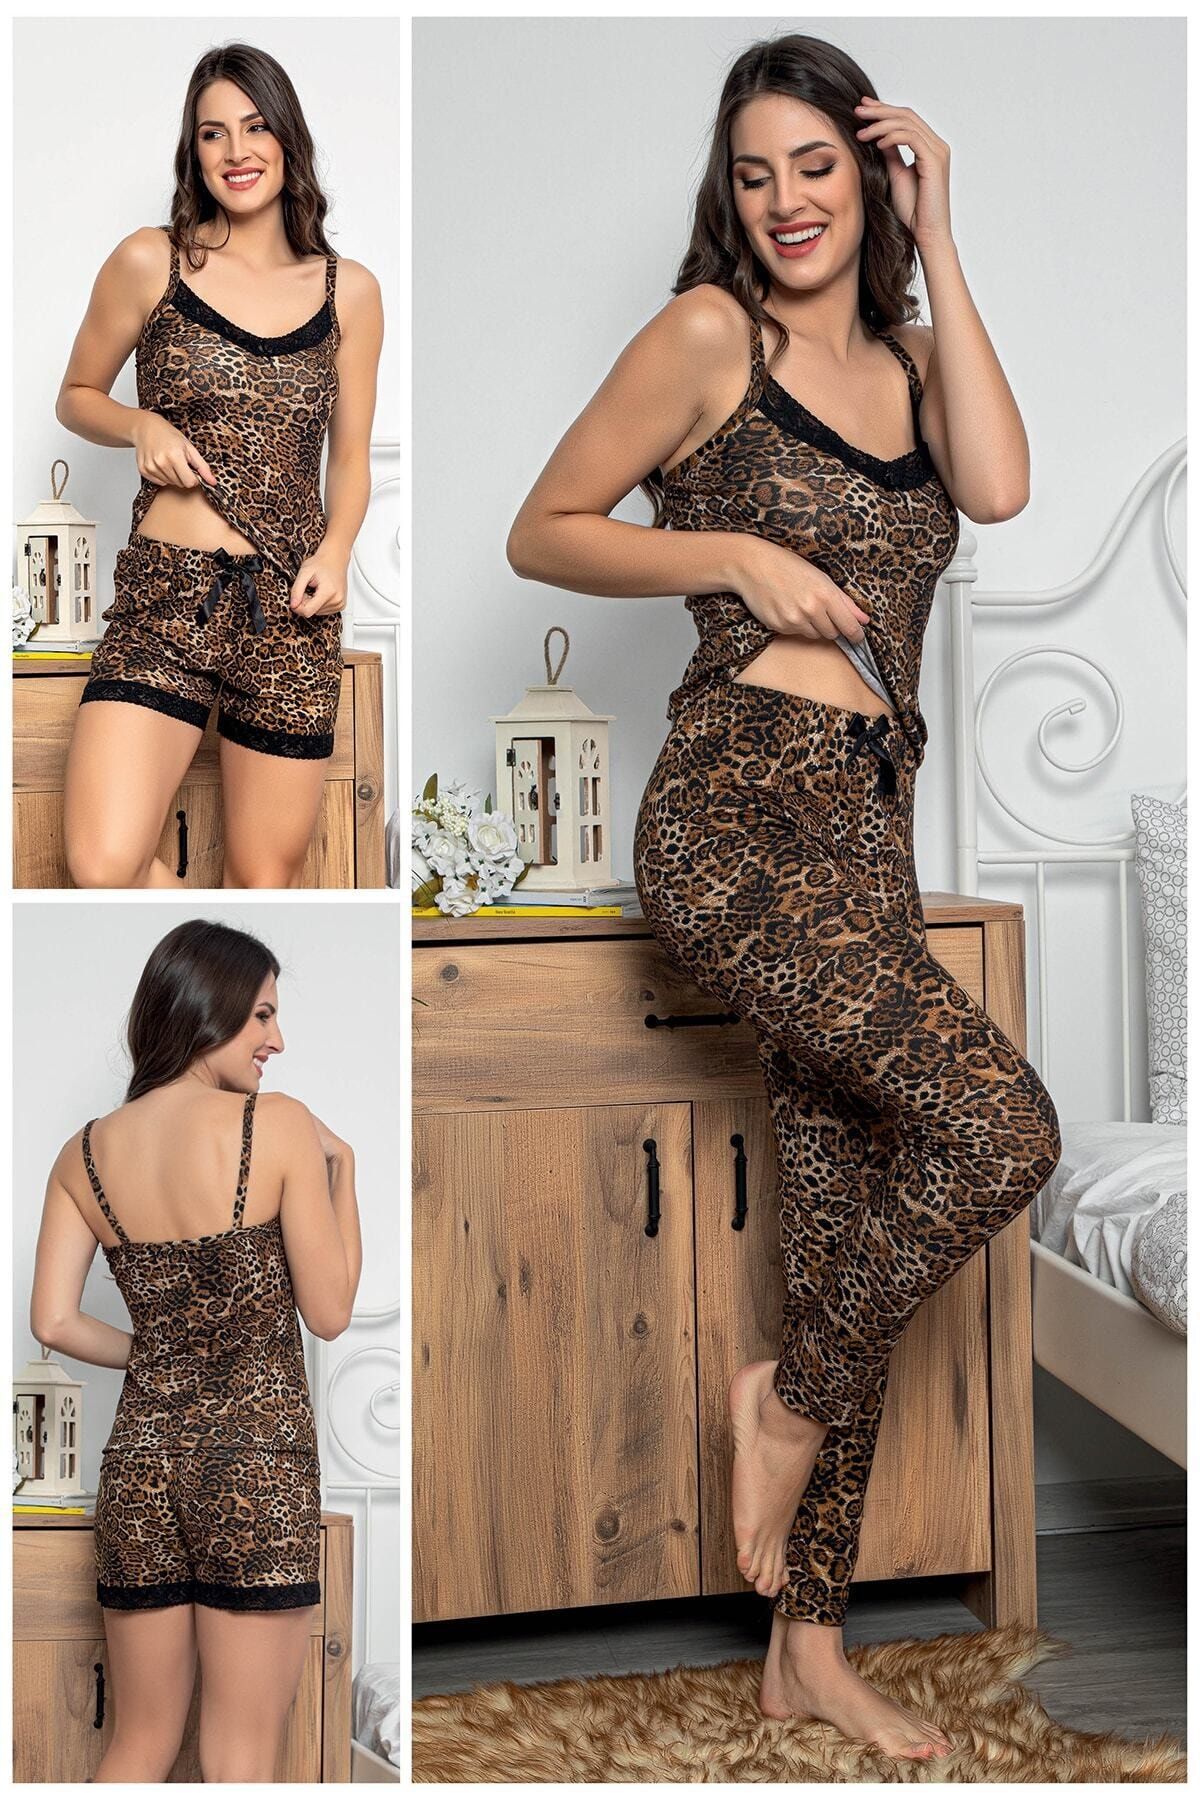 MyBen Kadın Leopar Desenli Dantel Detaylı Şortlu Ve Taytlı Pijama Takımı 3'lü Set 75000